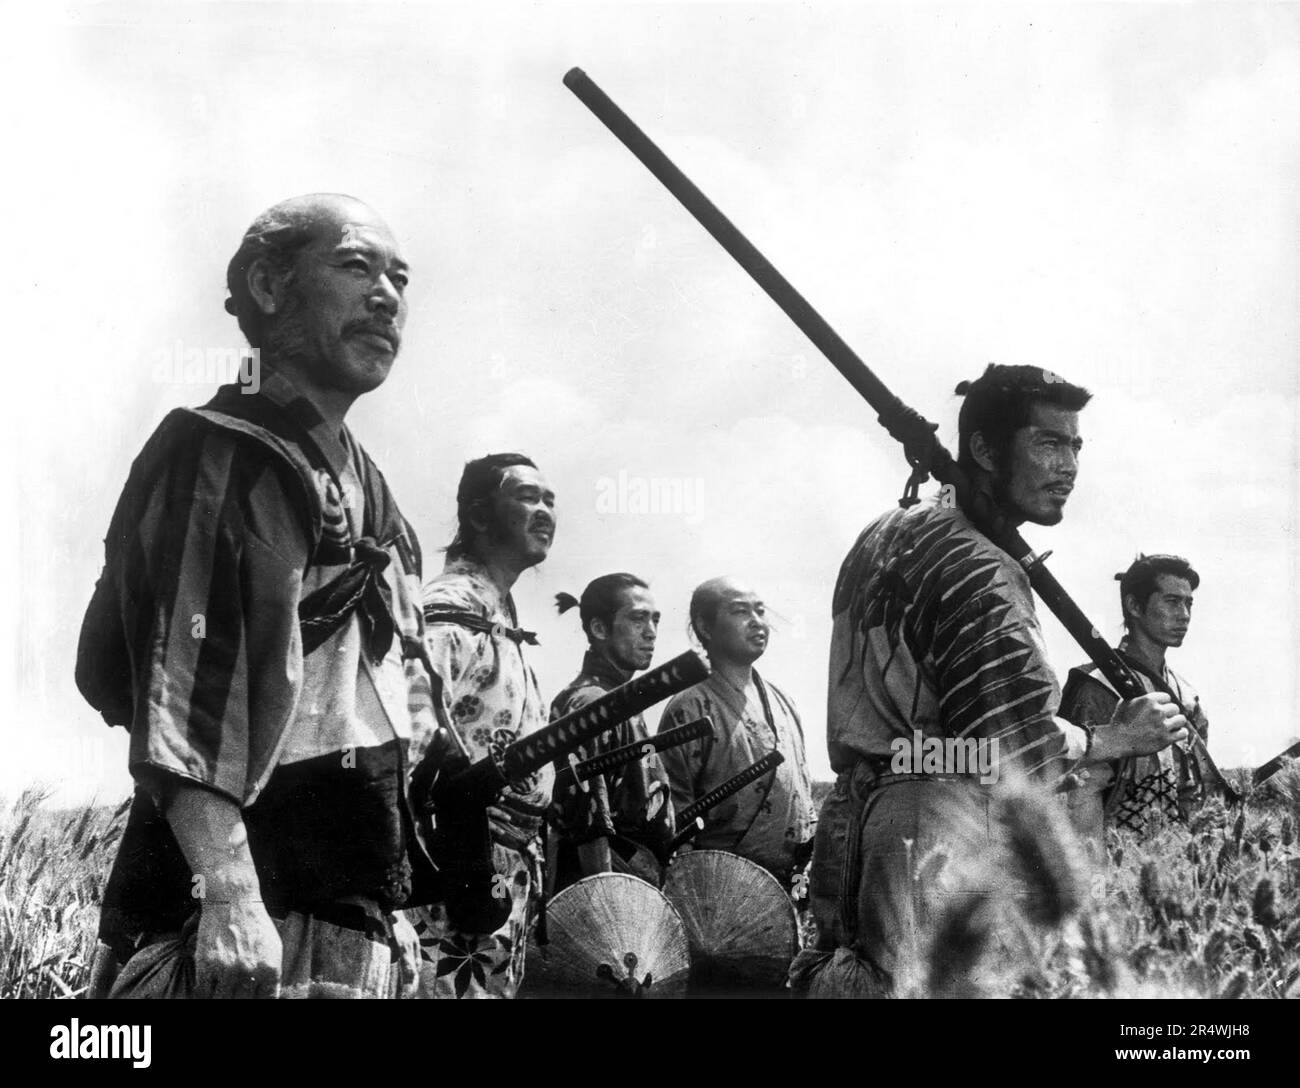 Sieben Samurai ist ein 1954 Japanische Zeitraum Abenteuer Film unter der Regie von Akira Kurosawa. Es erzählt die Geschichte eines Dorfes der Landwirte, dass sieben herrenlose Samurai Banditen, die nach der Ernte ihre Ernten zu stehlen Zurück zu bekämpfen. Starring Takashi Shimura und Toshiro Mifune. Stockfoto